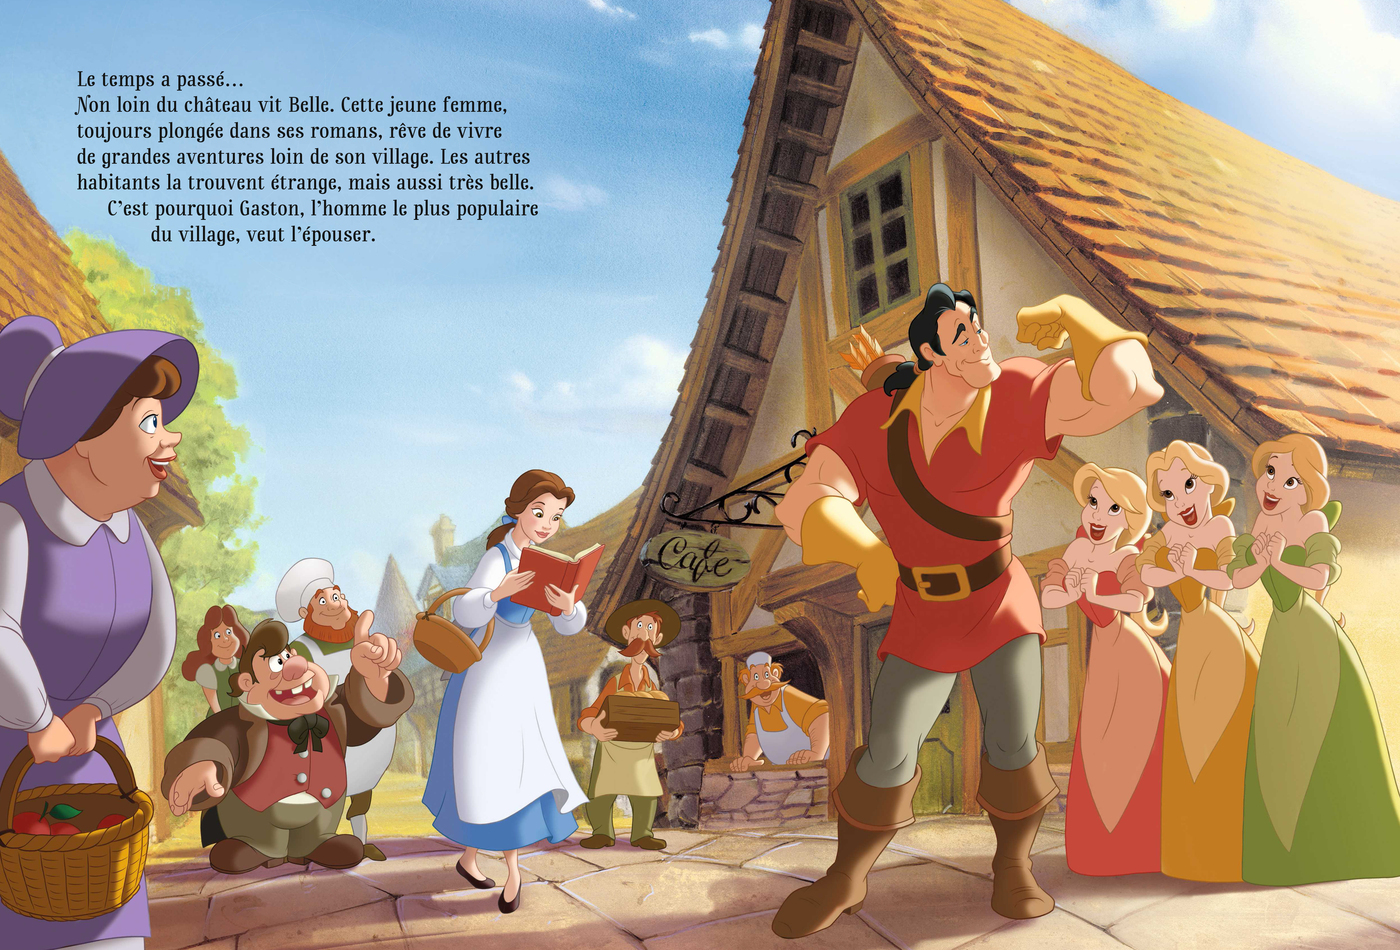 La Belle et la Bête - Disney - Disney Hachette - Grand format - Librairie  Gallimard PARIS